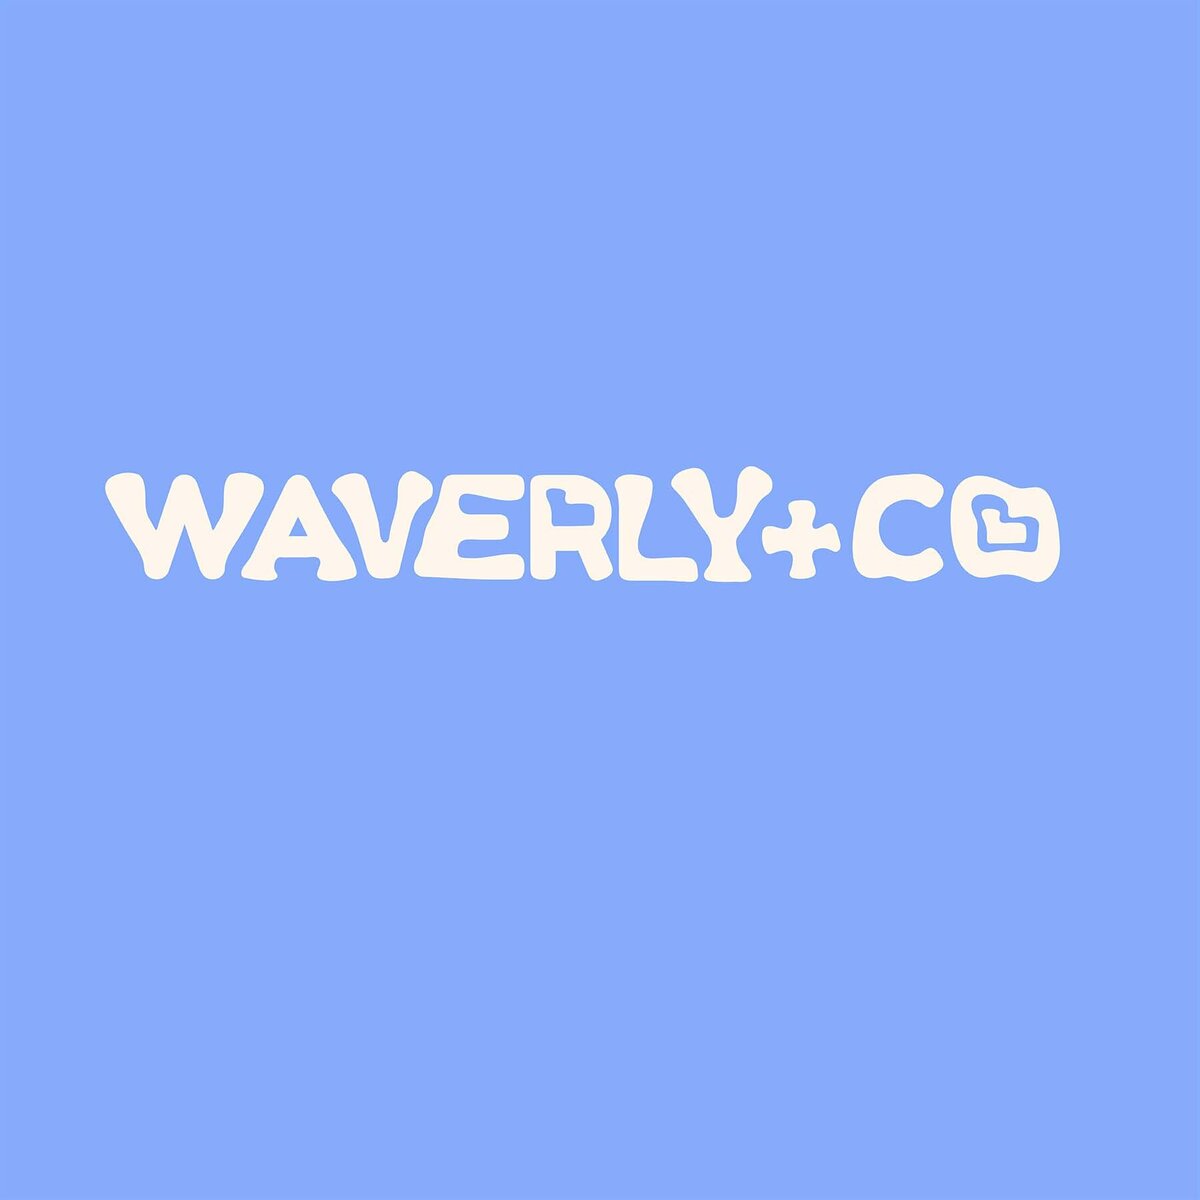 Waverly+co-06